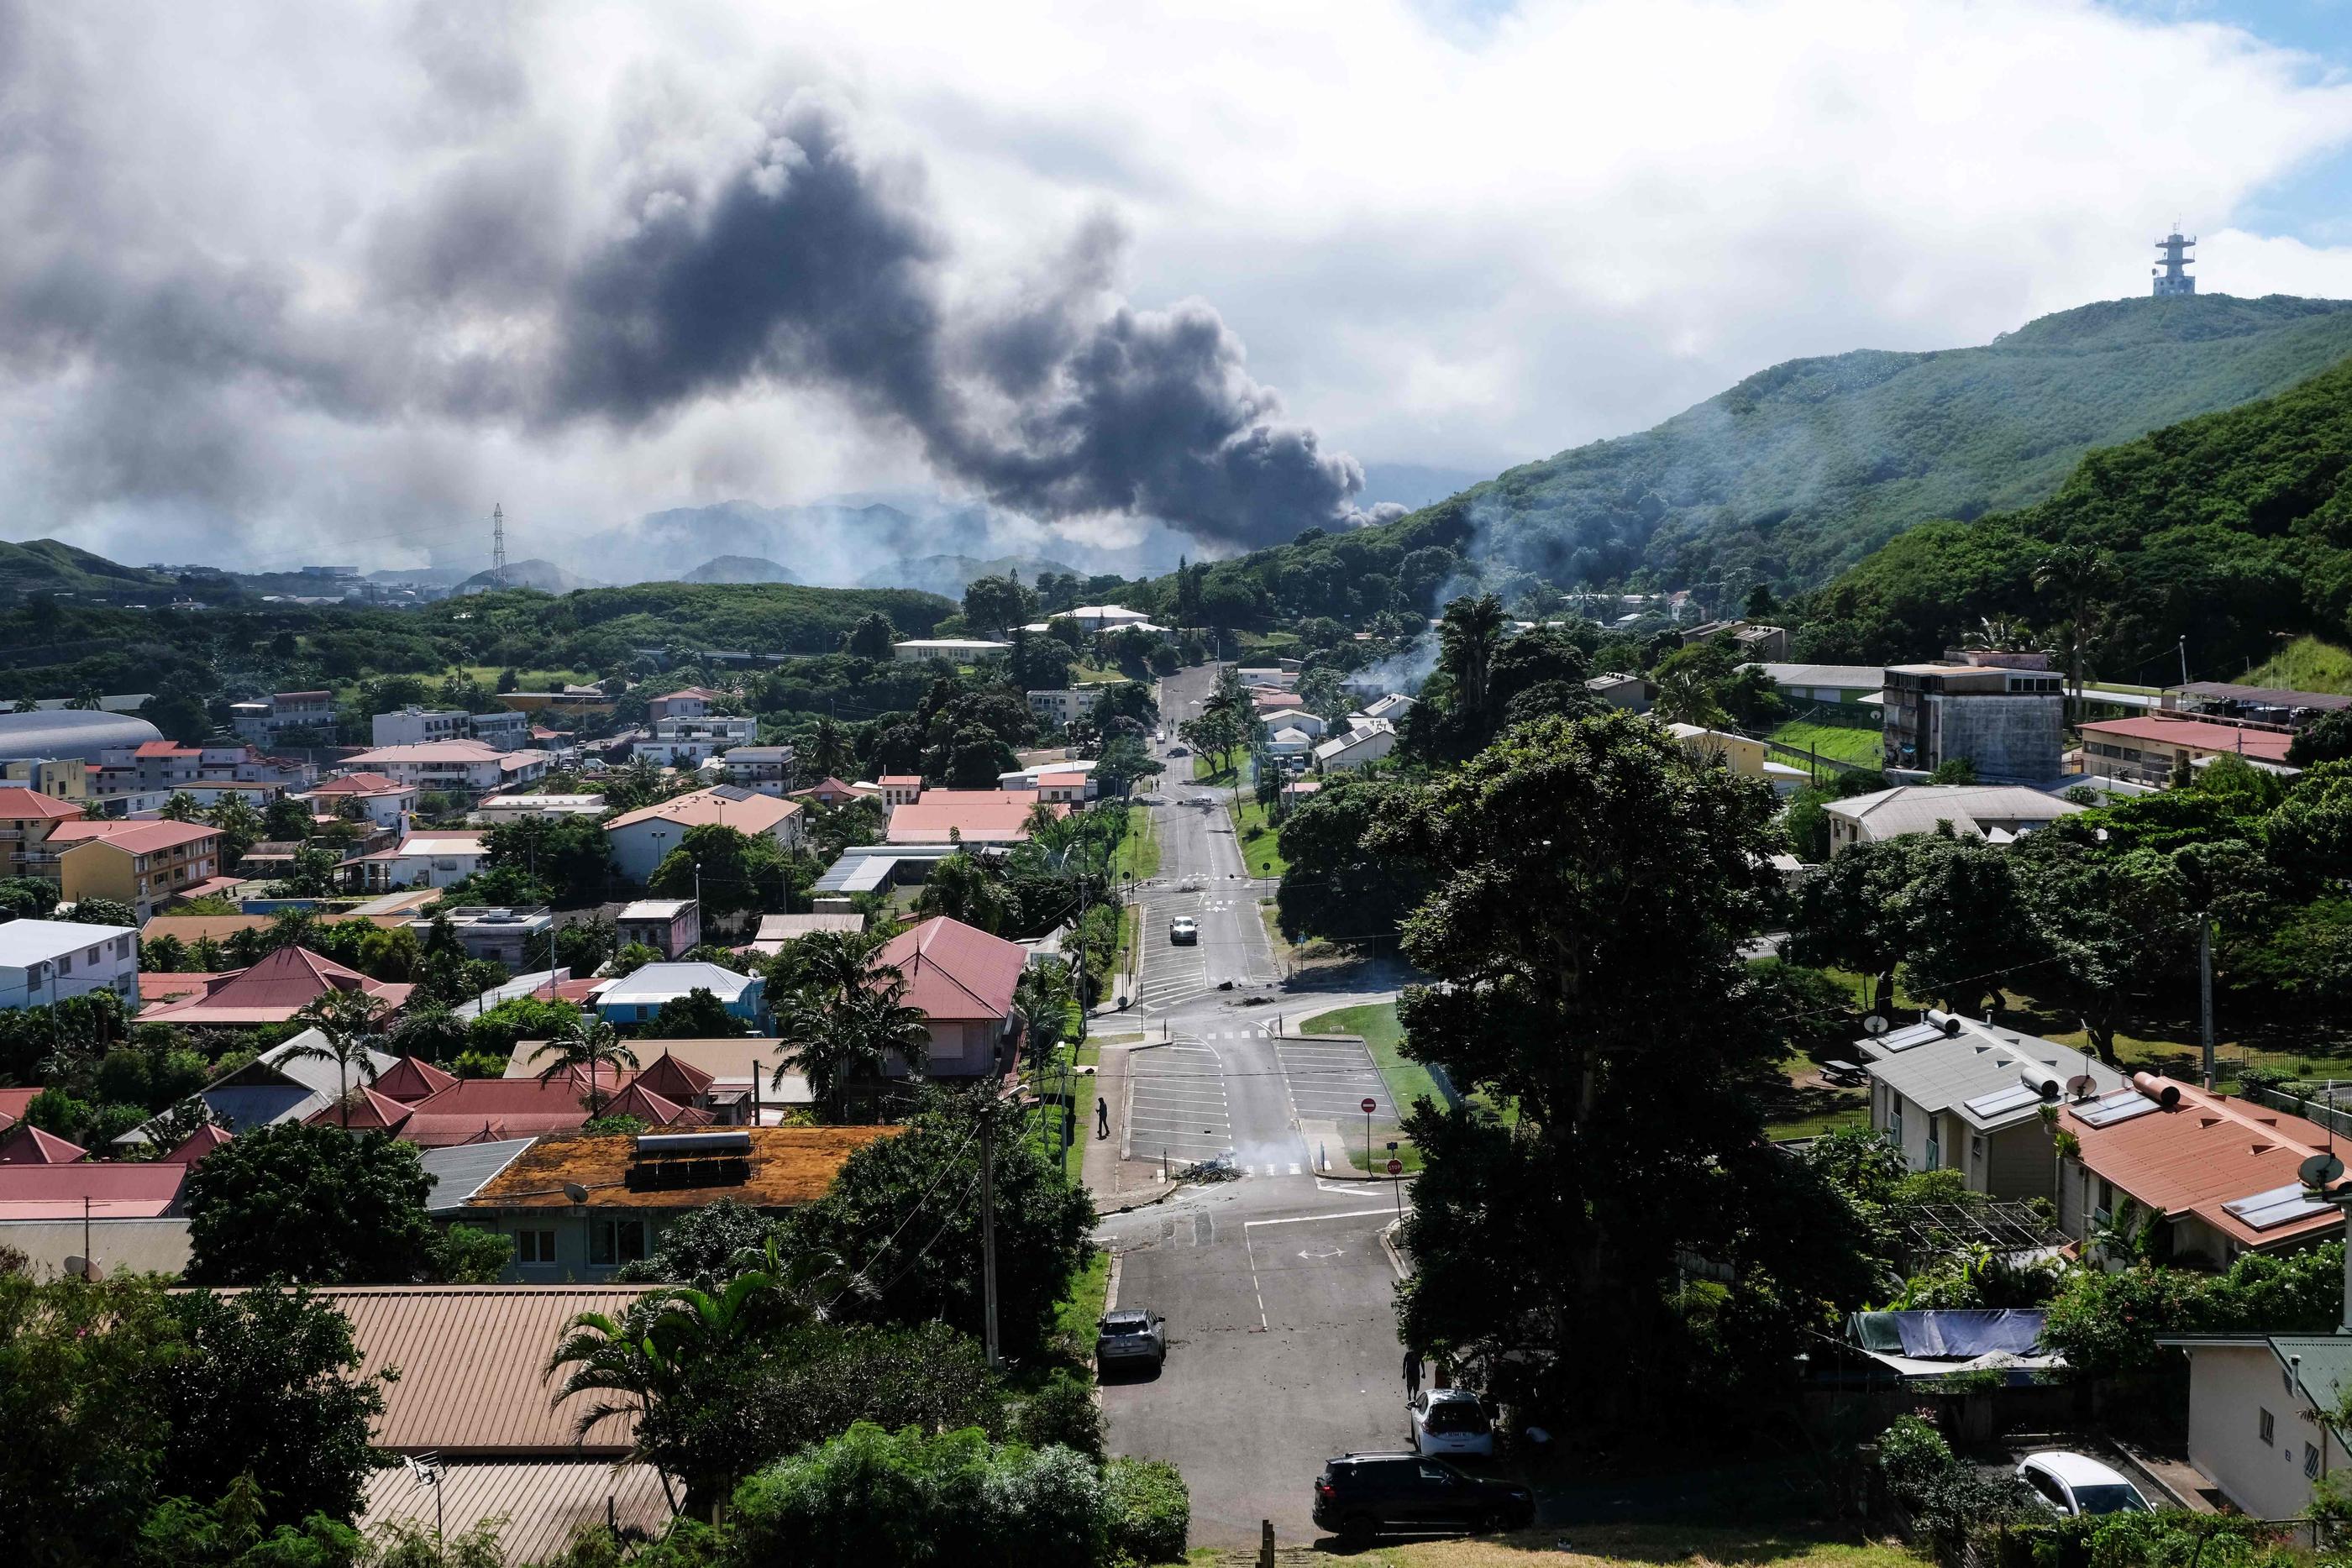 Le 14 mai, de la fumée s'élève au-dessus de Nouméa, en Nouvelle-Calédonie. De nombreux habitants s'inquiètent pour leur sécurité à cause de violentes émeutes. AFP/Theo Rouby